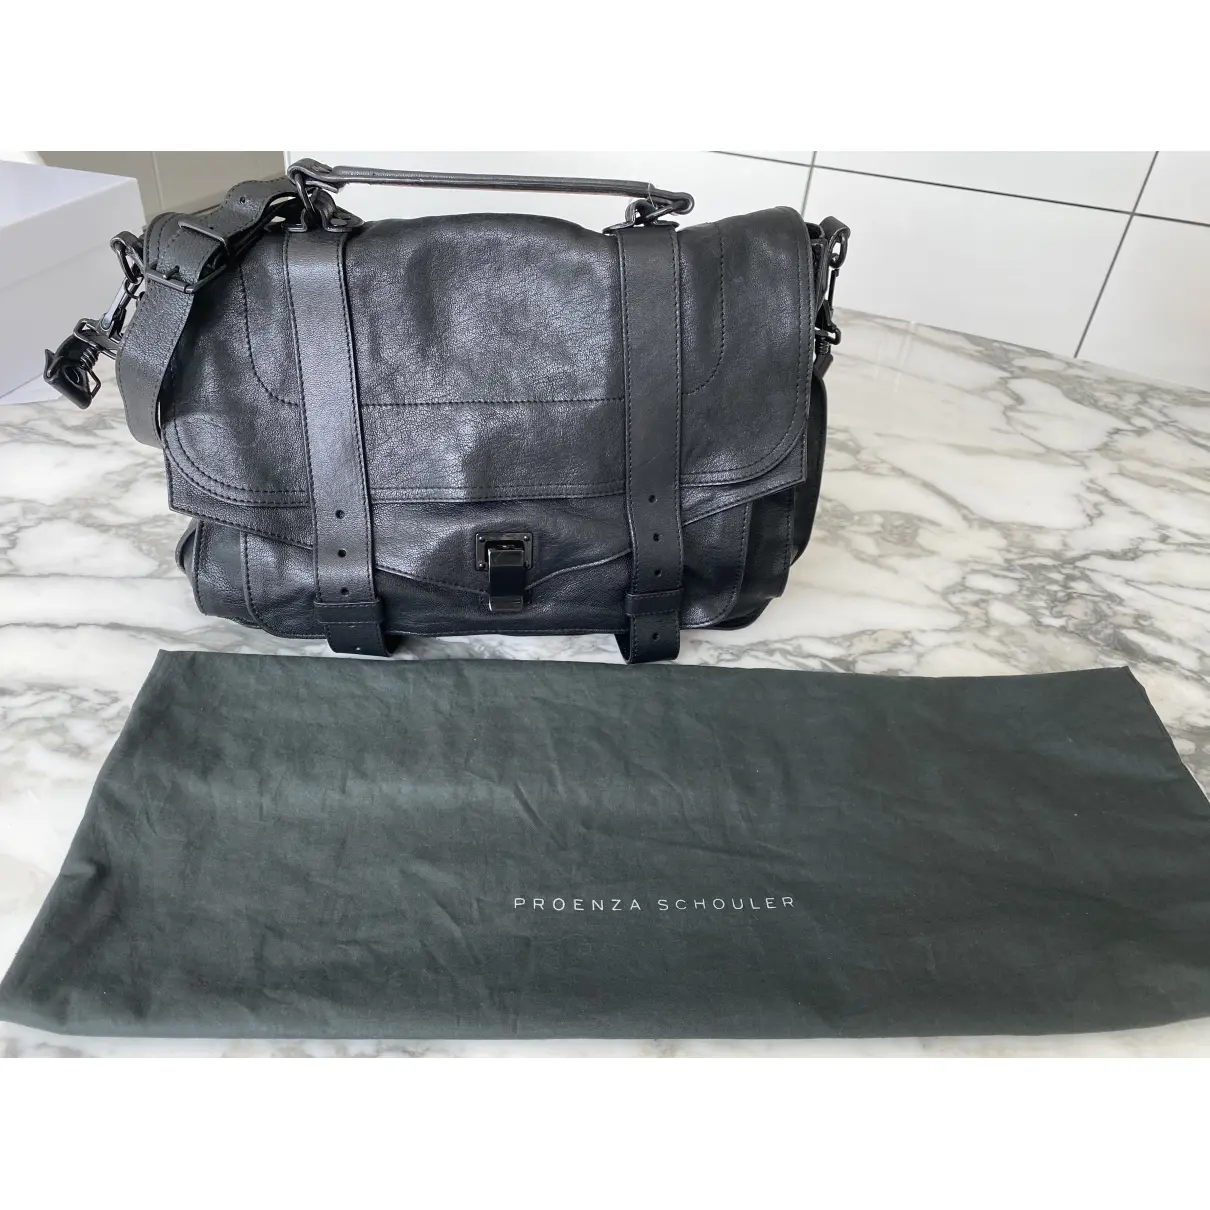 Buy Proenza Schouler PS1 Large leather satchel online